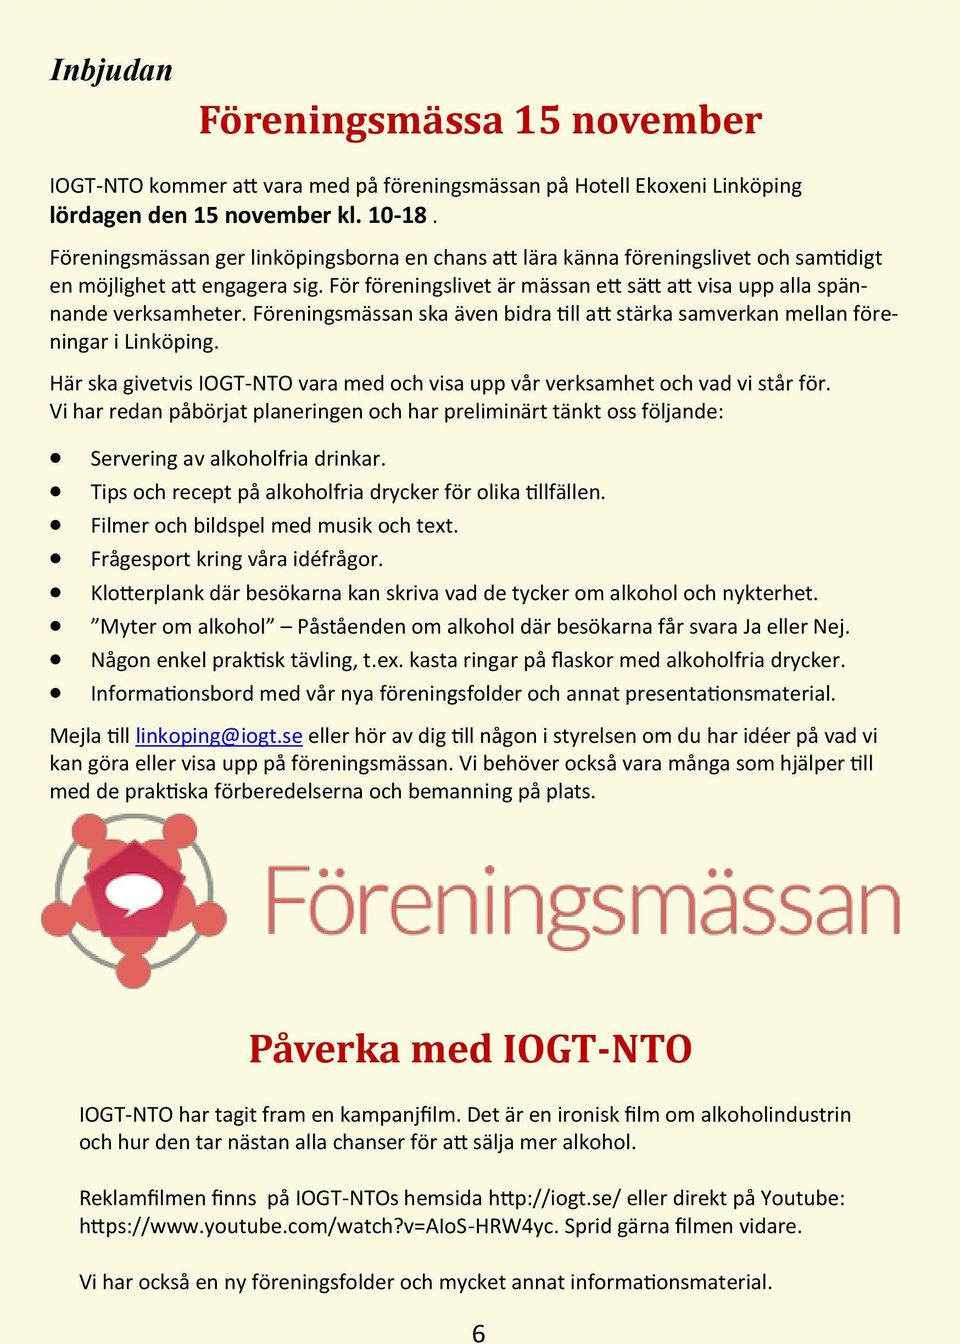 Föreningsmässan ska även bidra till att stärka samverkan mellan föreningar i Linköping. Här ska givetvis IOGT-NTO vara med och visa upp vår verksamhet och vad vi står för.